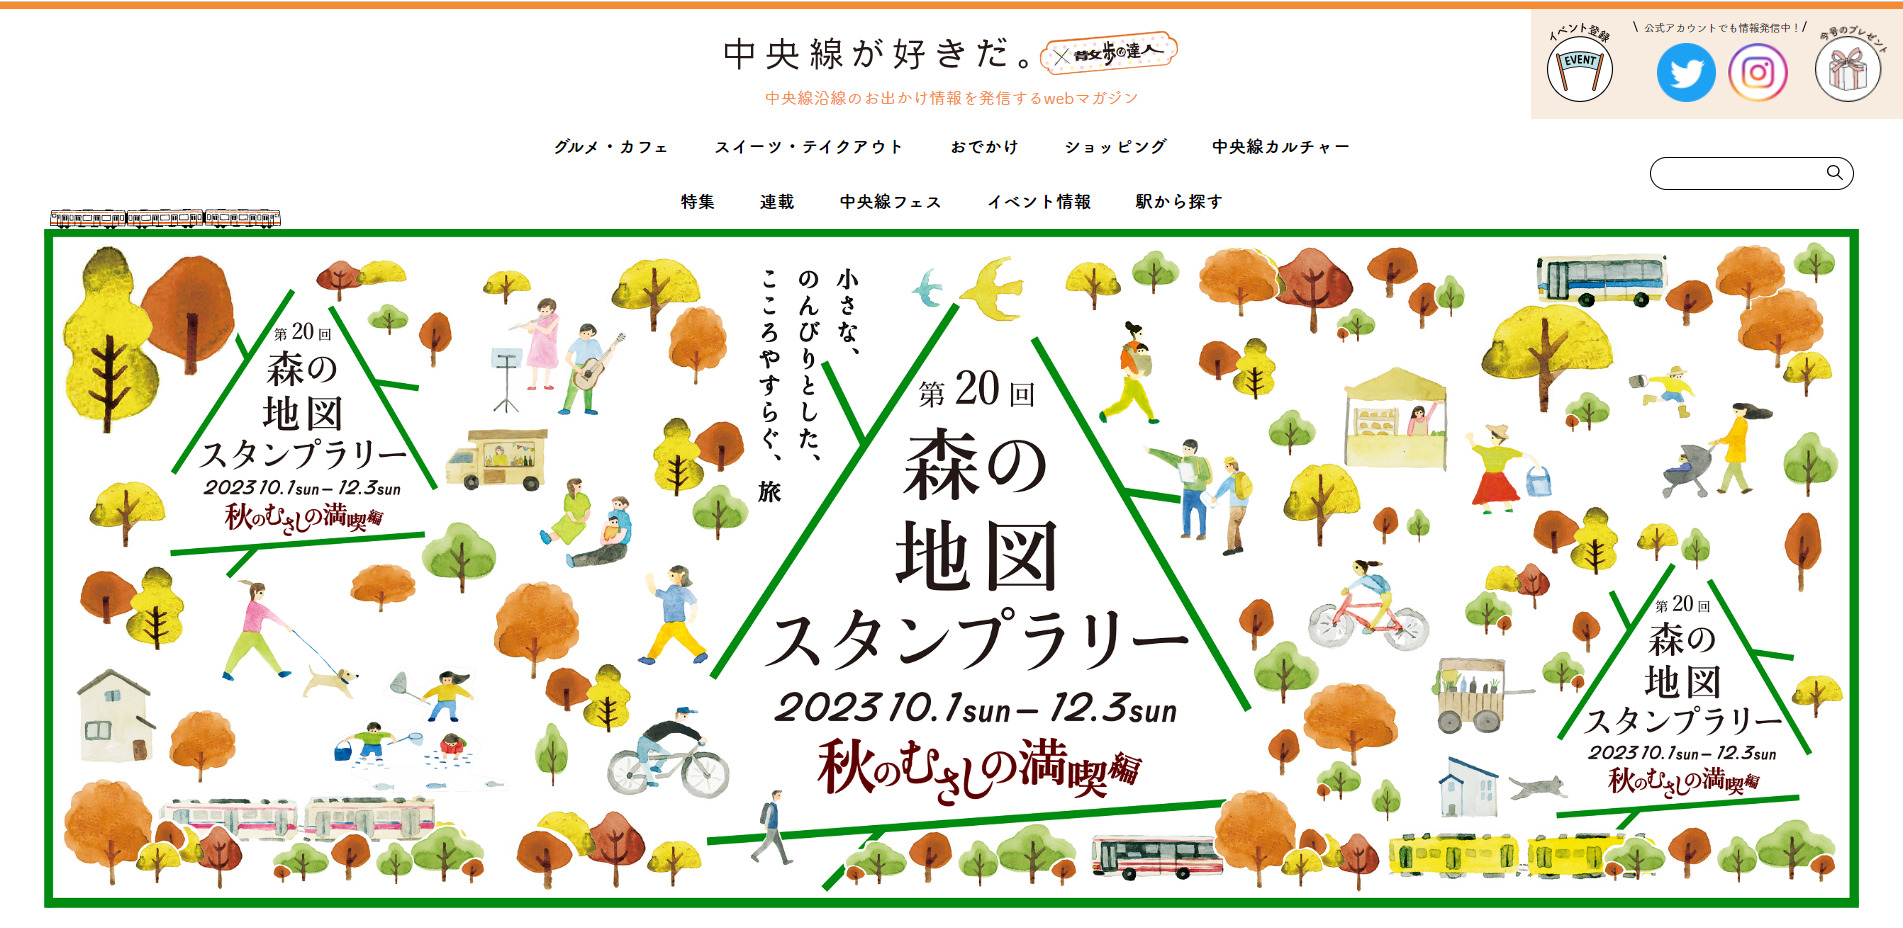 【10/1開始】武蔵野エリアで『森の地図スタンプラリー』開催 ラリーポイント全50カ所の拡大版